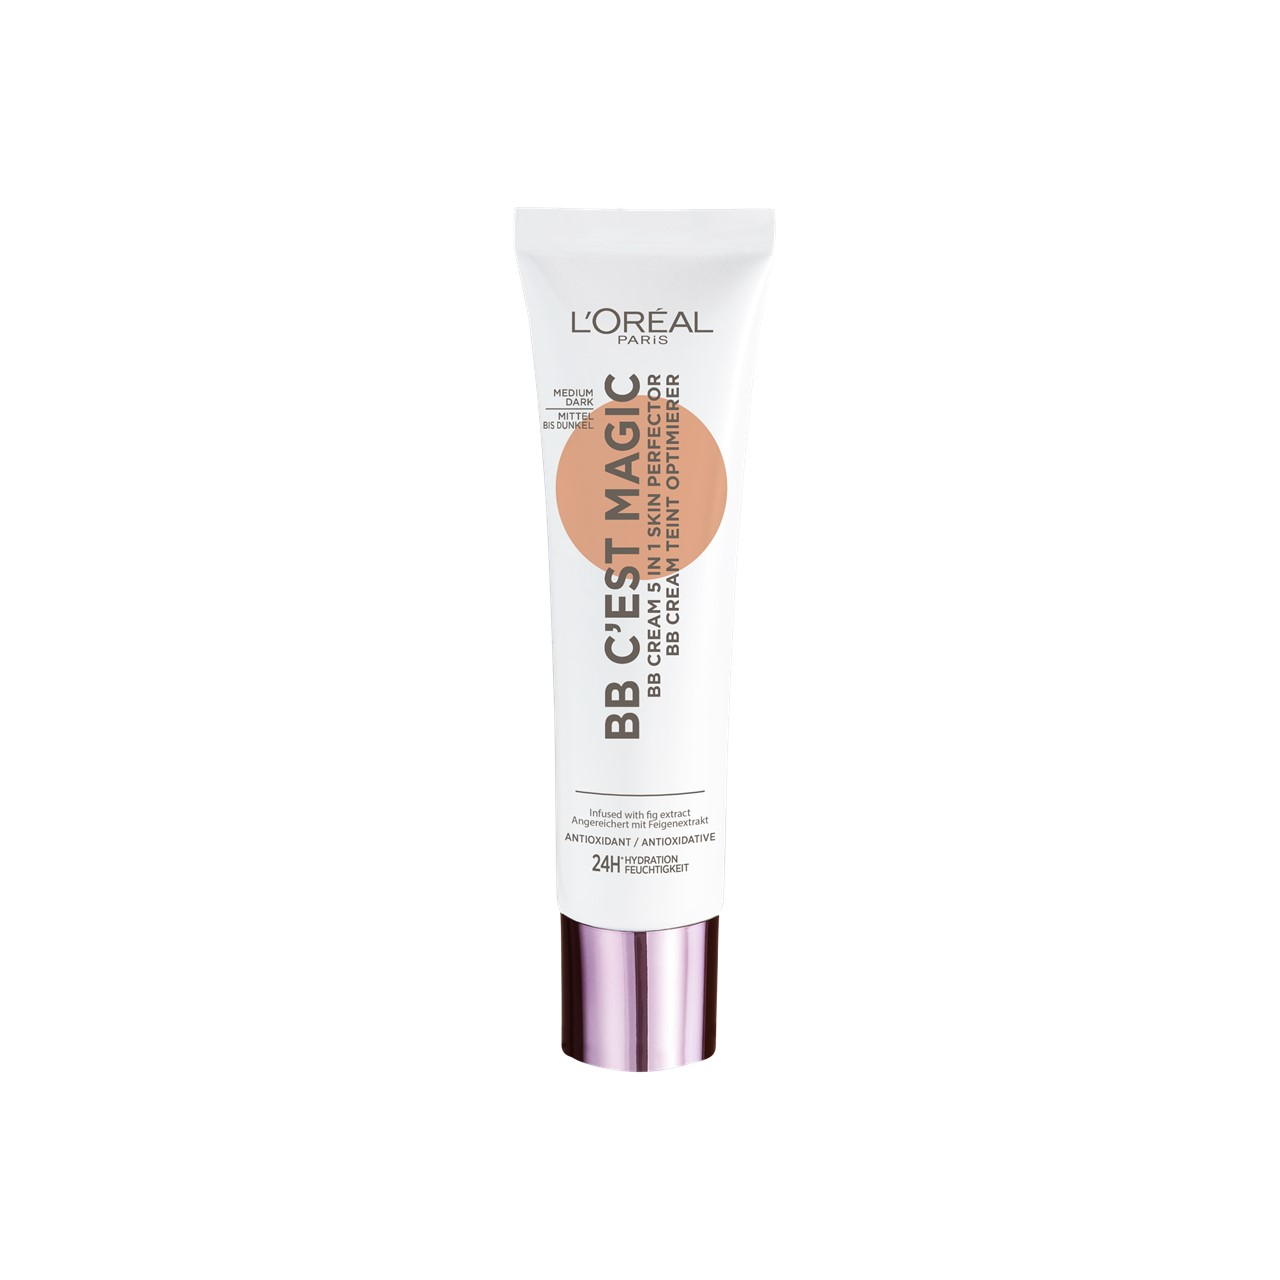 L'Oréal Paris C'est Magic BB Cream 05 Medium Dark 30ml (1.01fl oz)